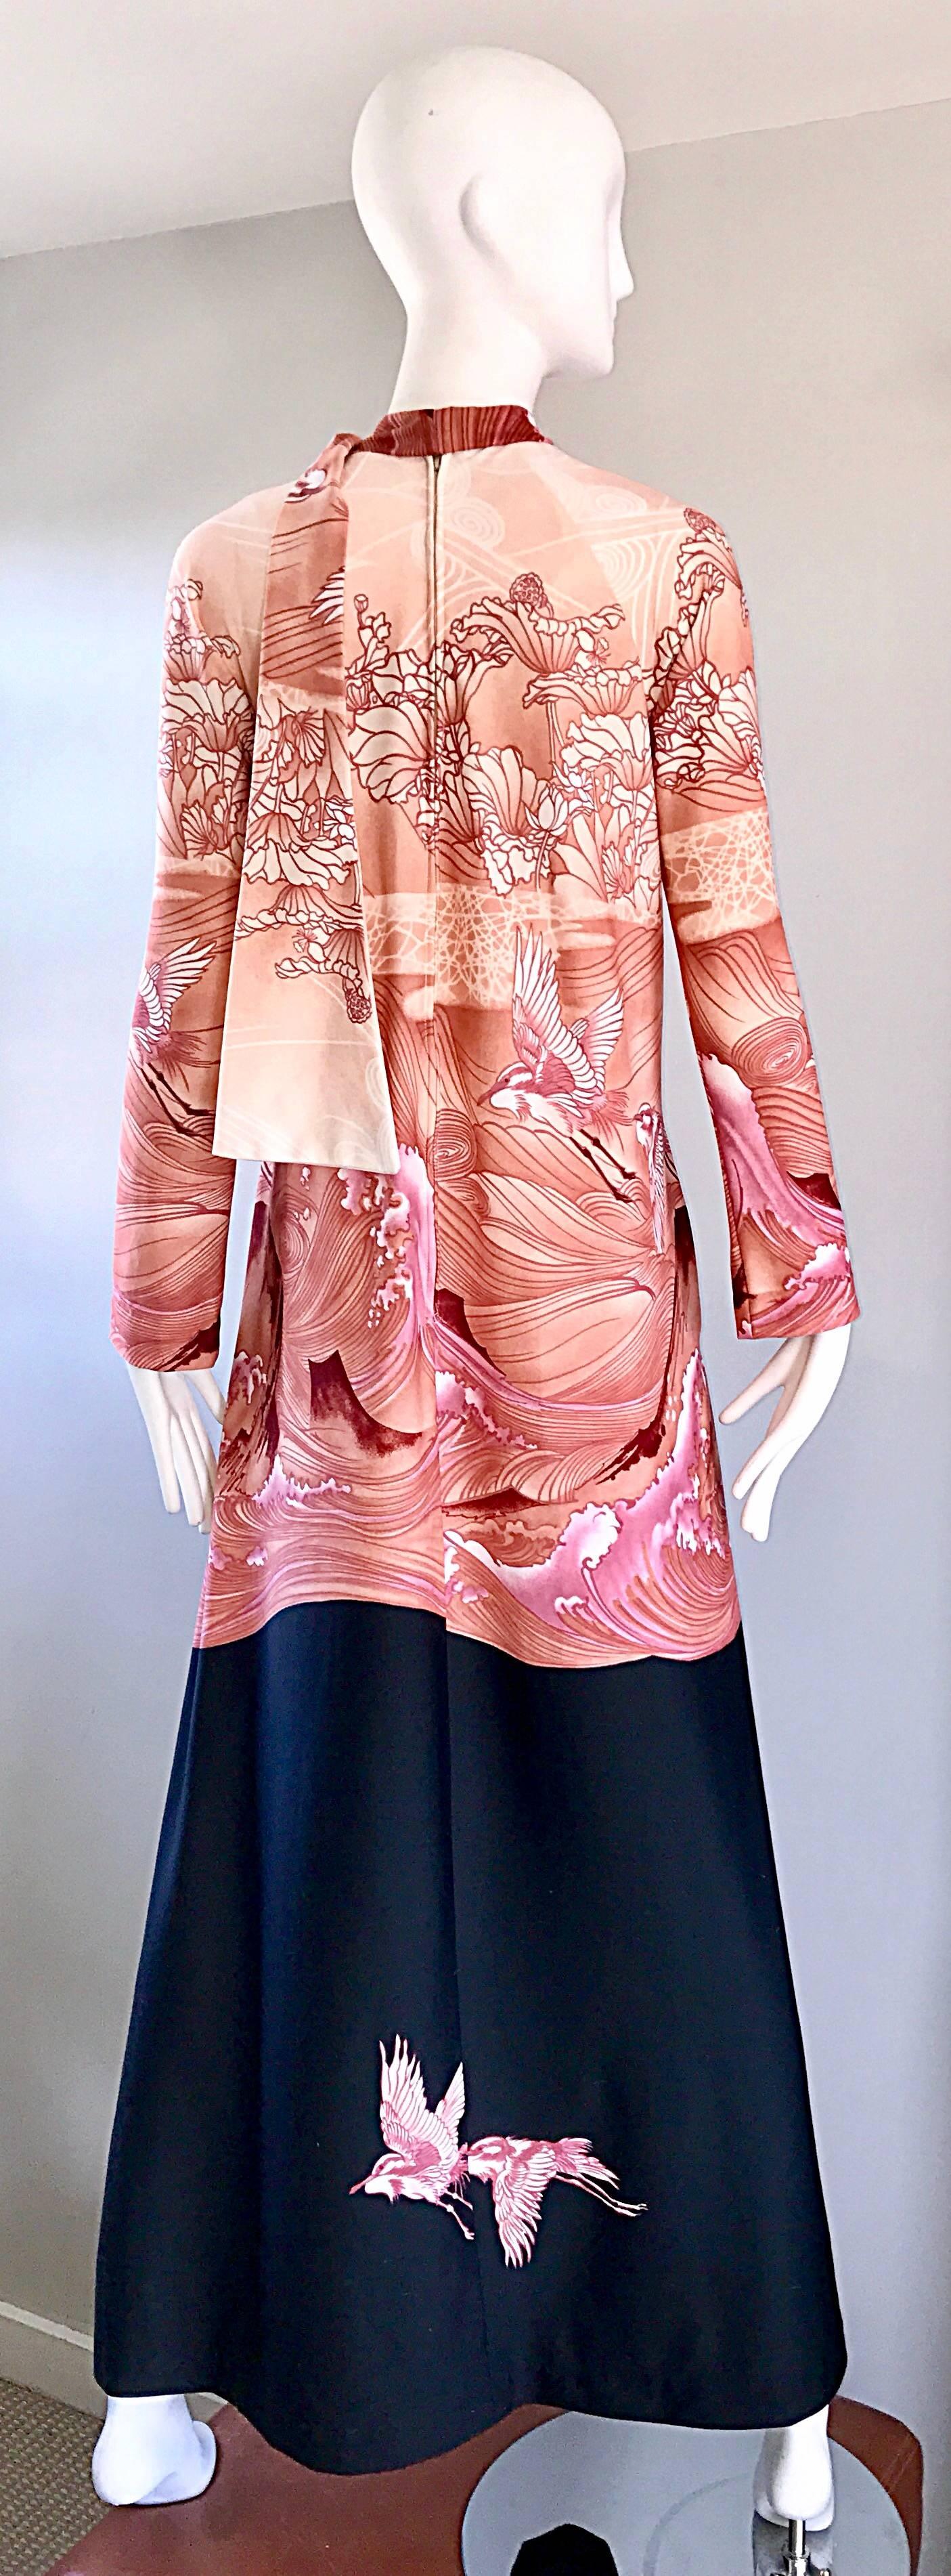 japanese inspired dresses